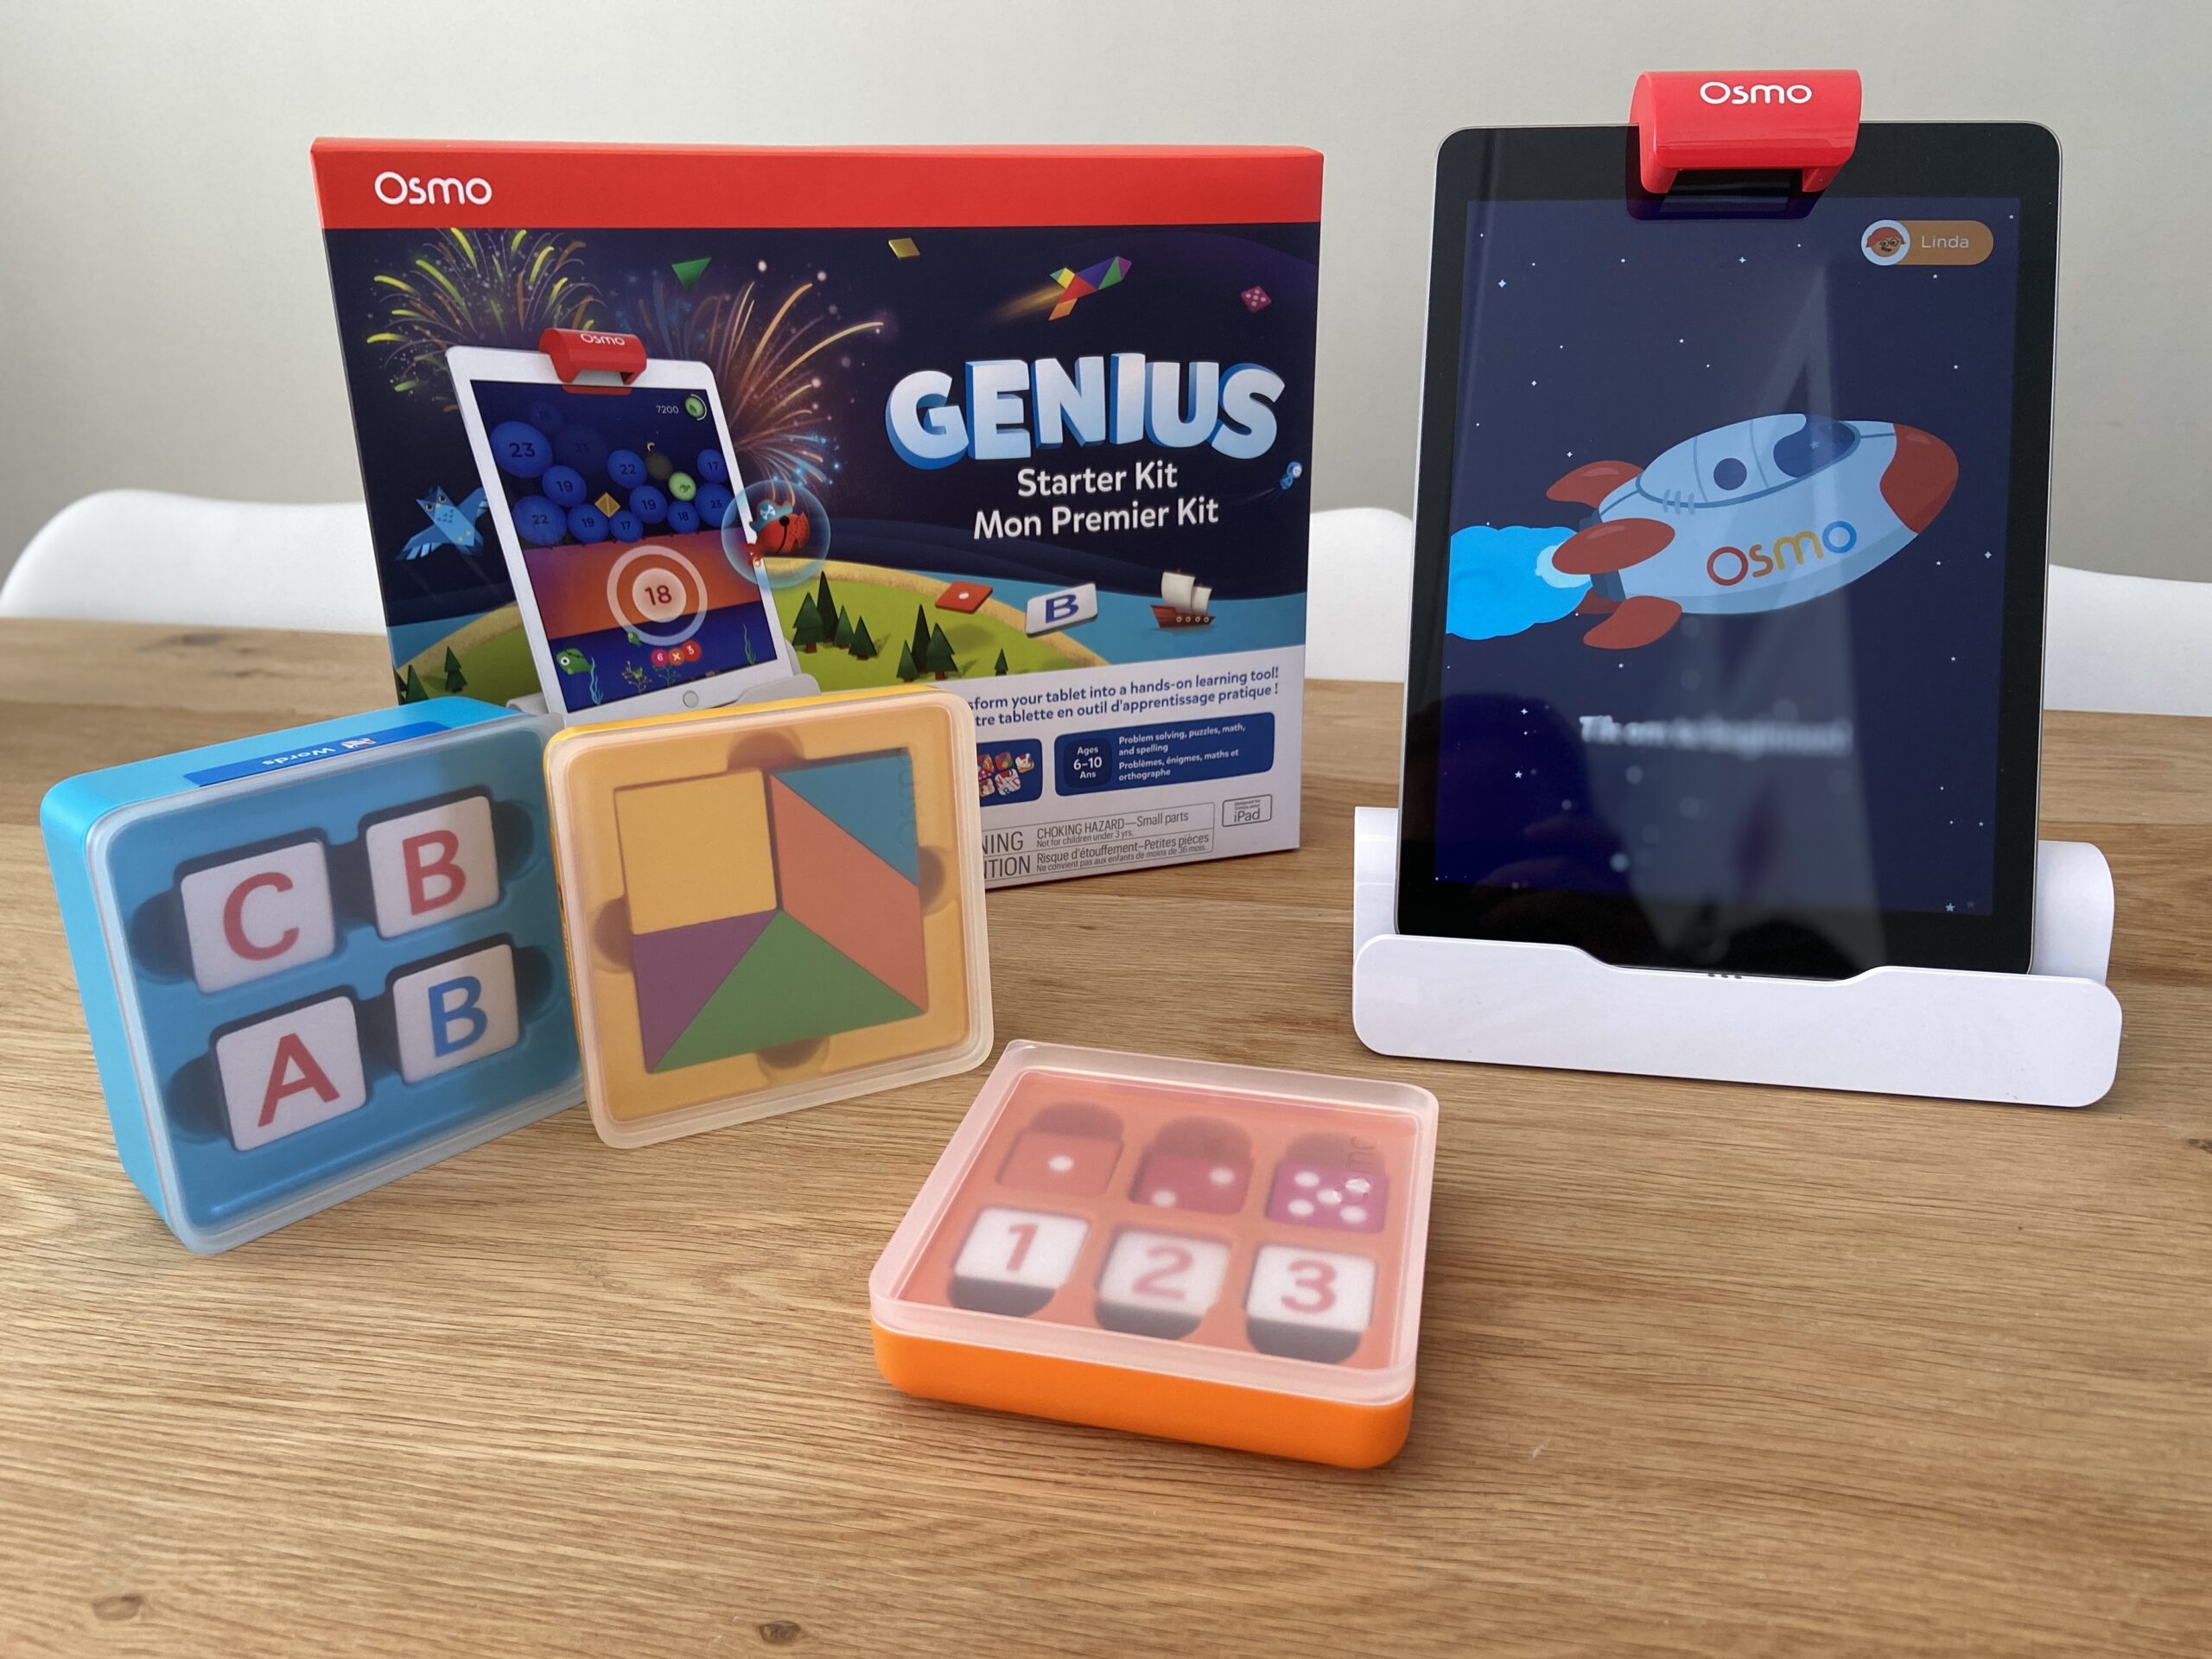 Je bekijkt nu Osmo Genius Starter Kit